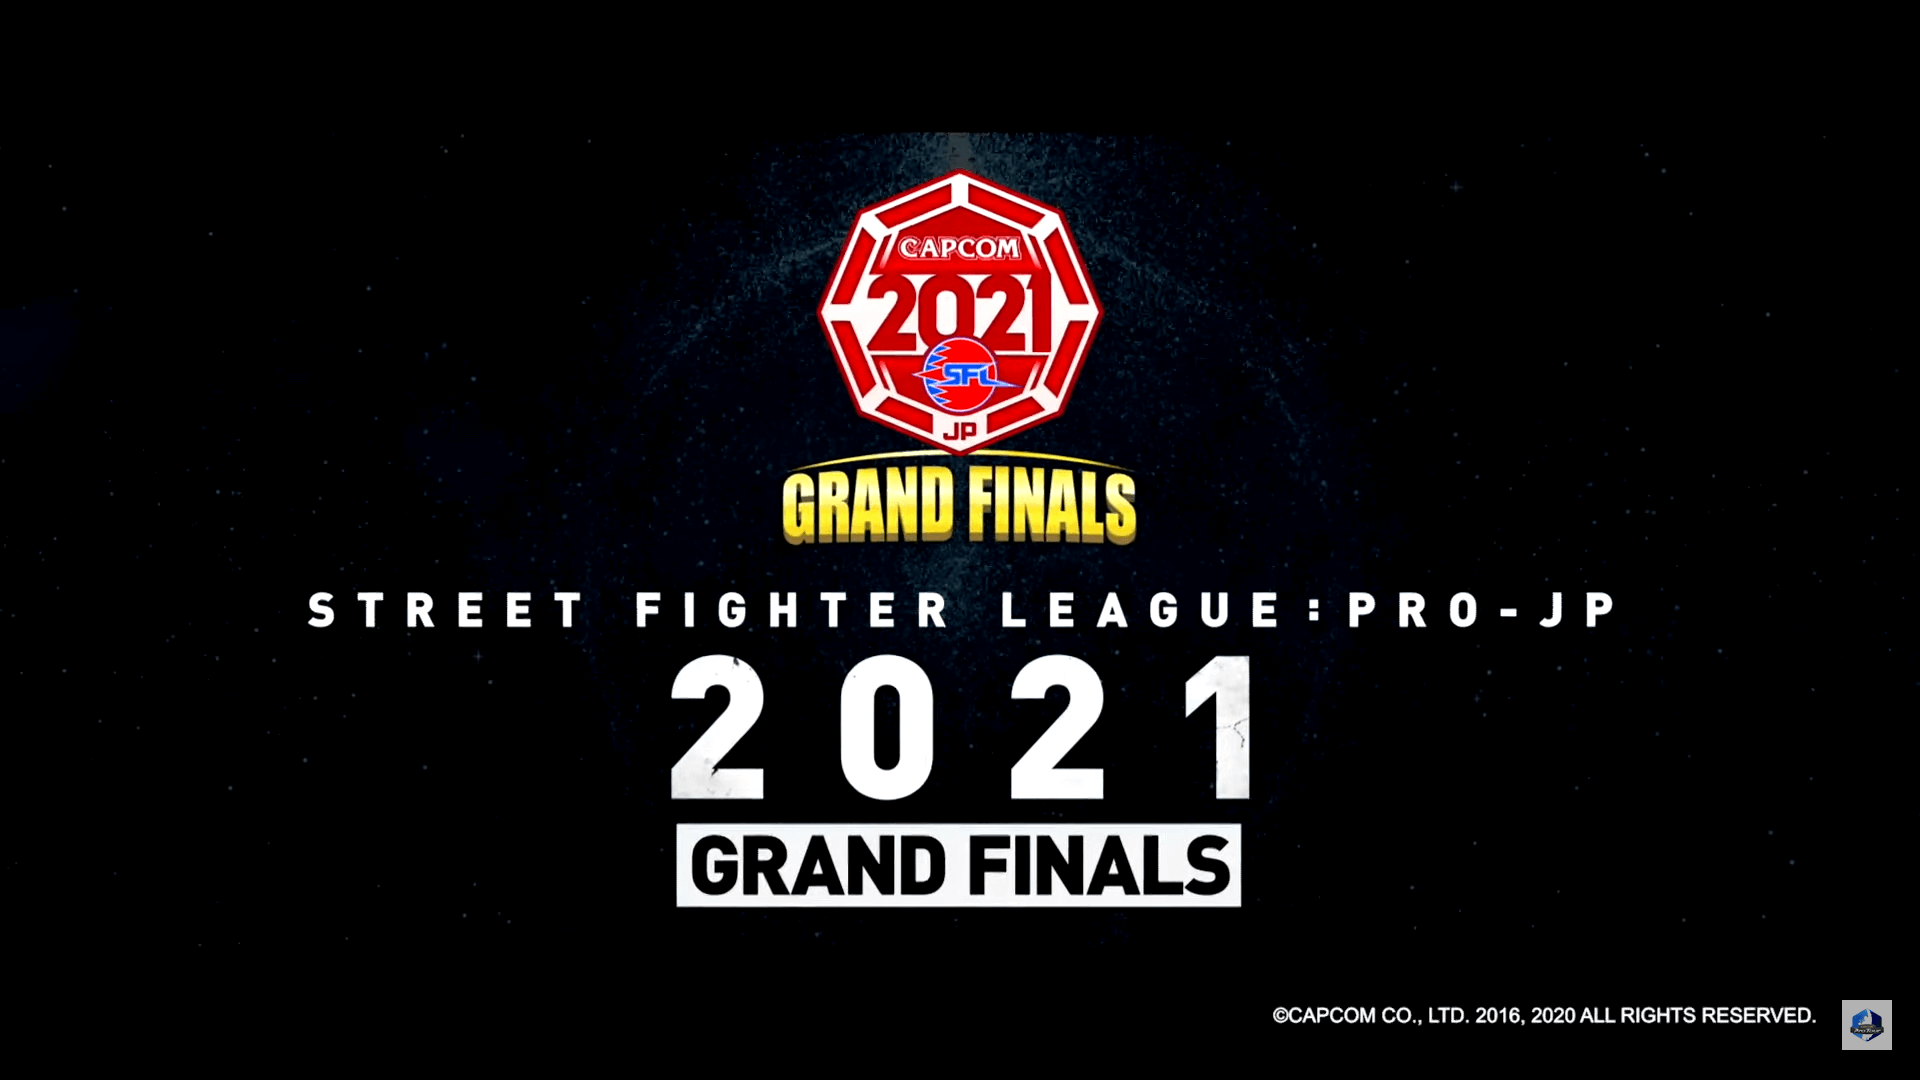 The Best in Japan: Street Fighter League Pro-JP Grand Final